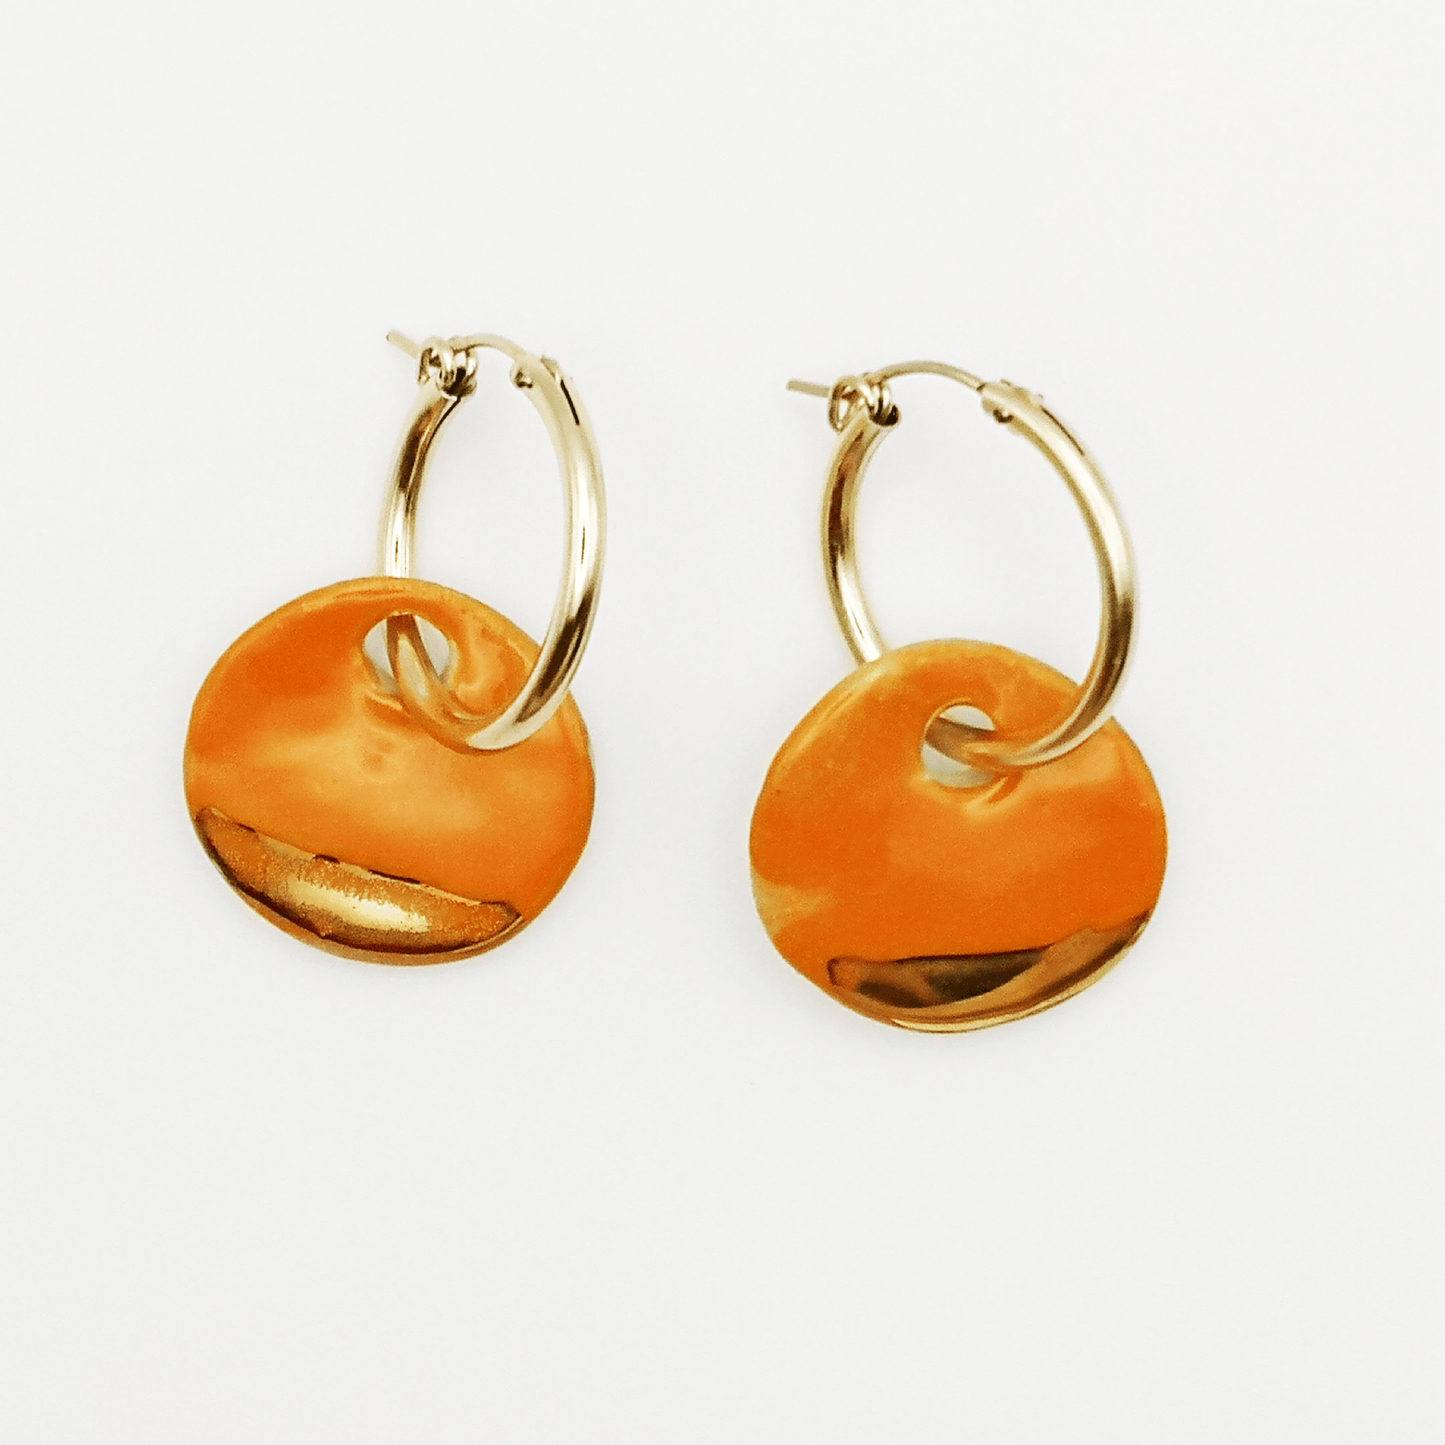 Boucles d'oreilles oranges pour femme or gold filled Provence